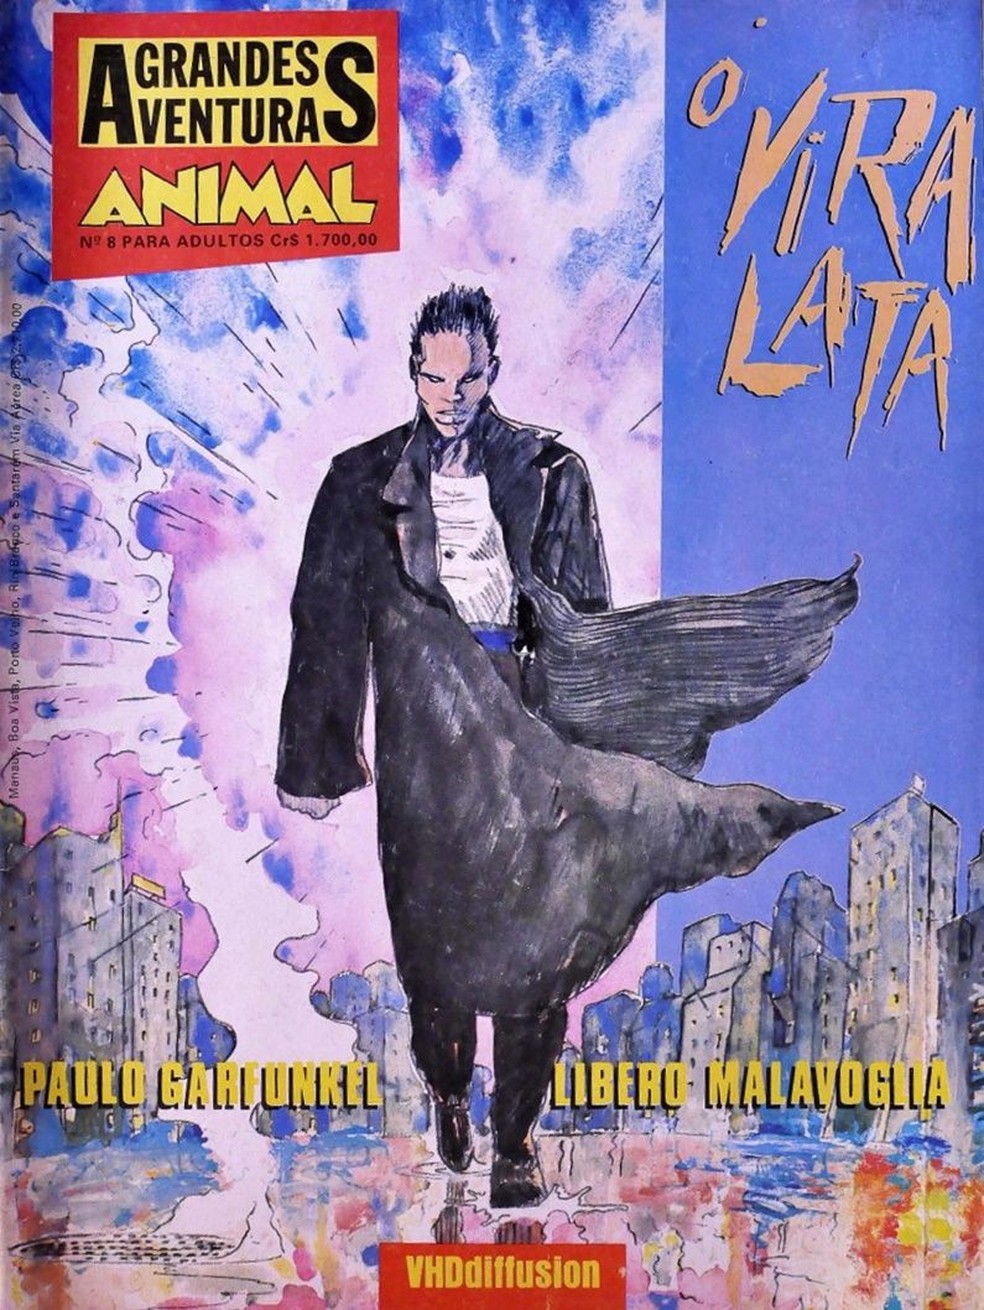 O Vira-Lata estreou em novembro de 1991, numa edição especial da Animal. A revista, conhecida por publicar quadrinhos europeus de vanguarda, também dava espaço a autores nacionais. — Foto: VHD Diffusion via BBC